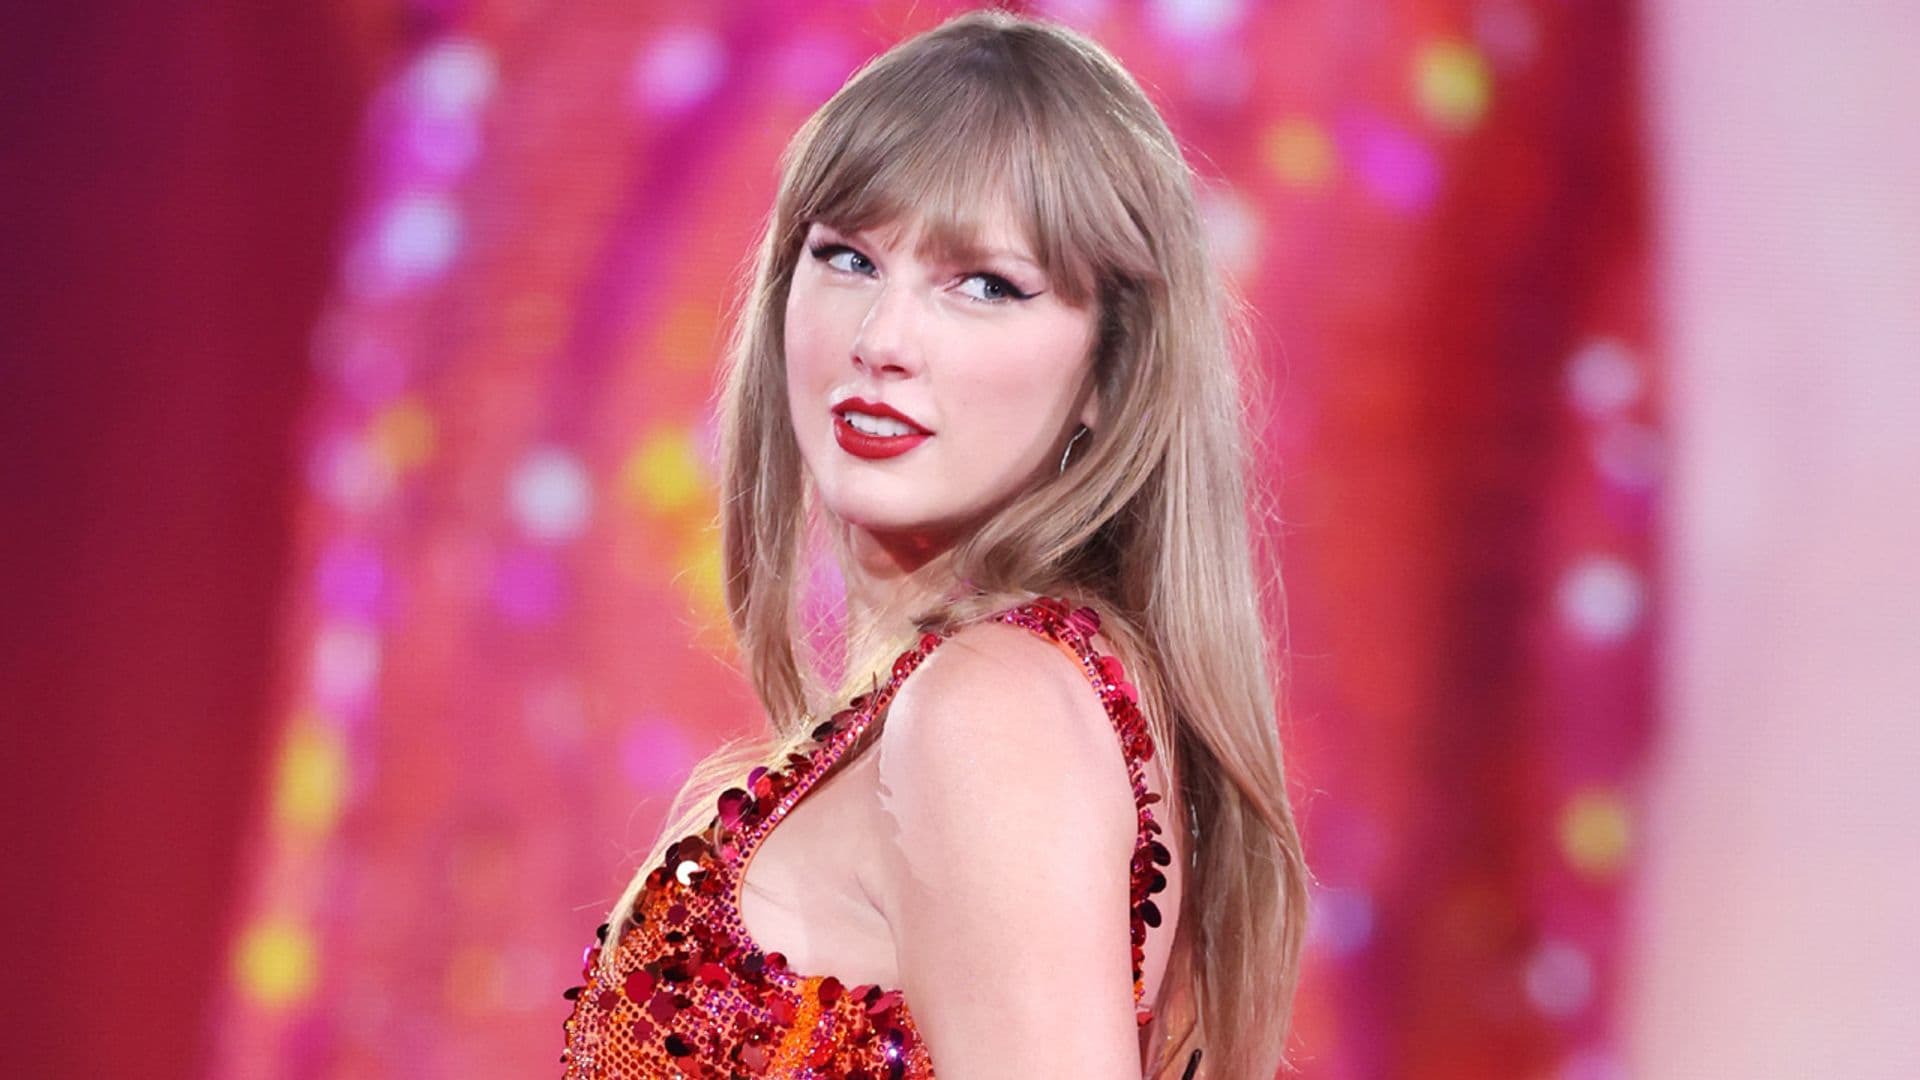 Copia el maquillaje y el peinado de Taylor Swift en su gira 'The Eras Tour'